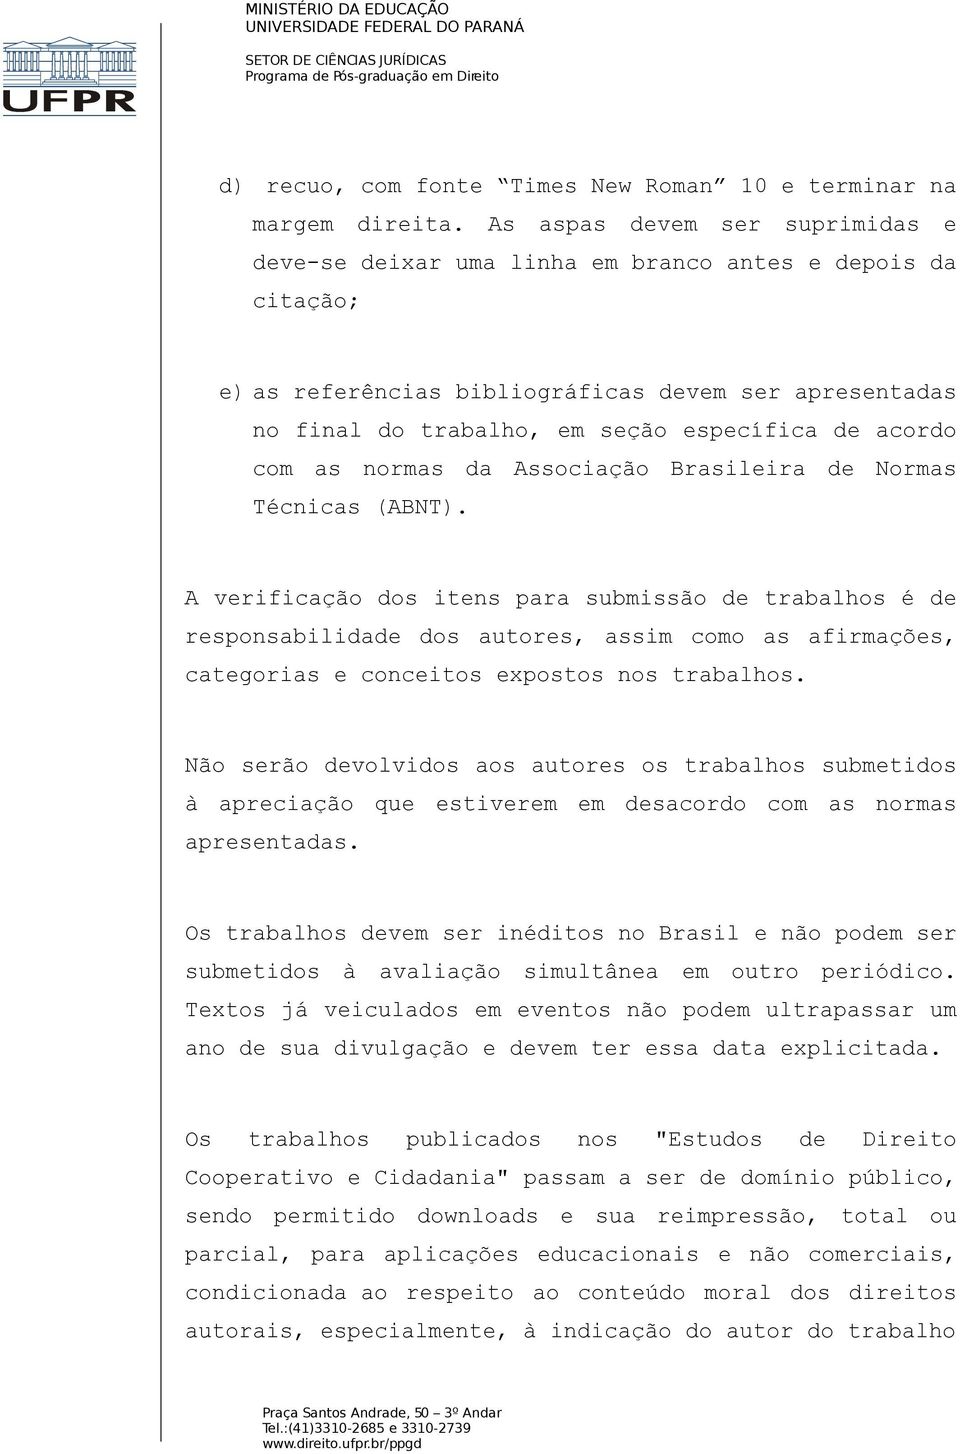 acordo com as normas da Associação Brasileira de Normas Técnicas (ABNT).